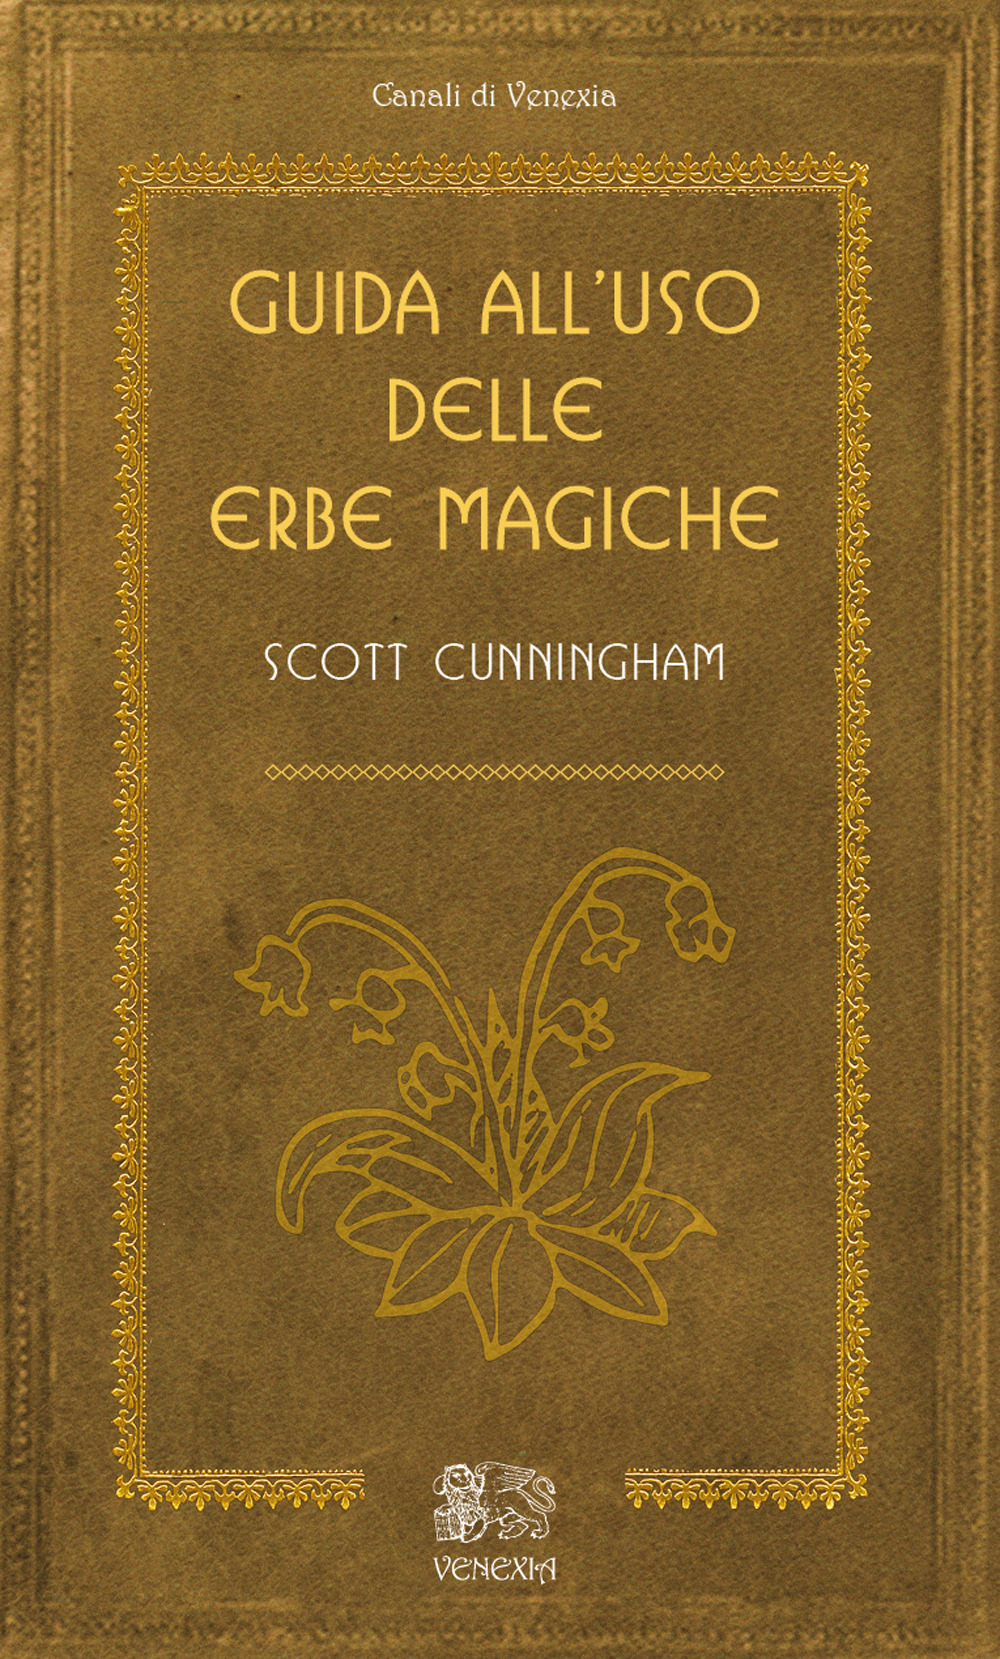 Libri Scott Cunningham - Guida All'uso Delle Erbe Magiche NUOVO SIGILLATO, EDIZIONE DEL 11/01/2019 SUBITO DISPONIBILE